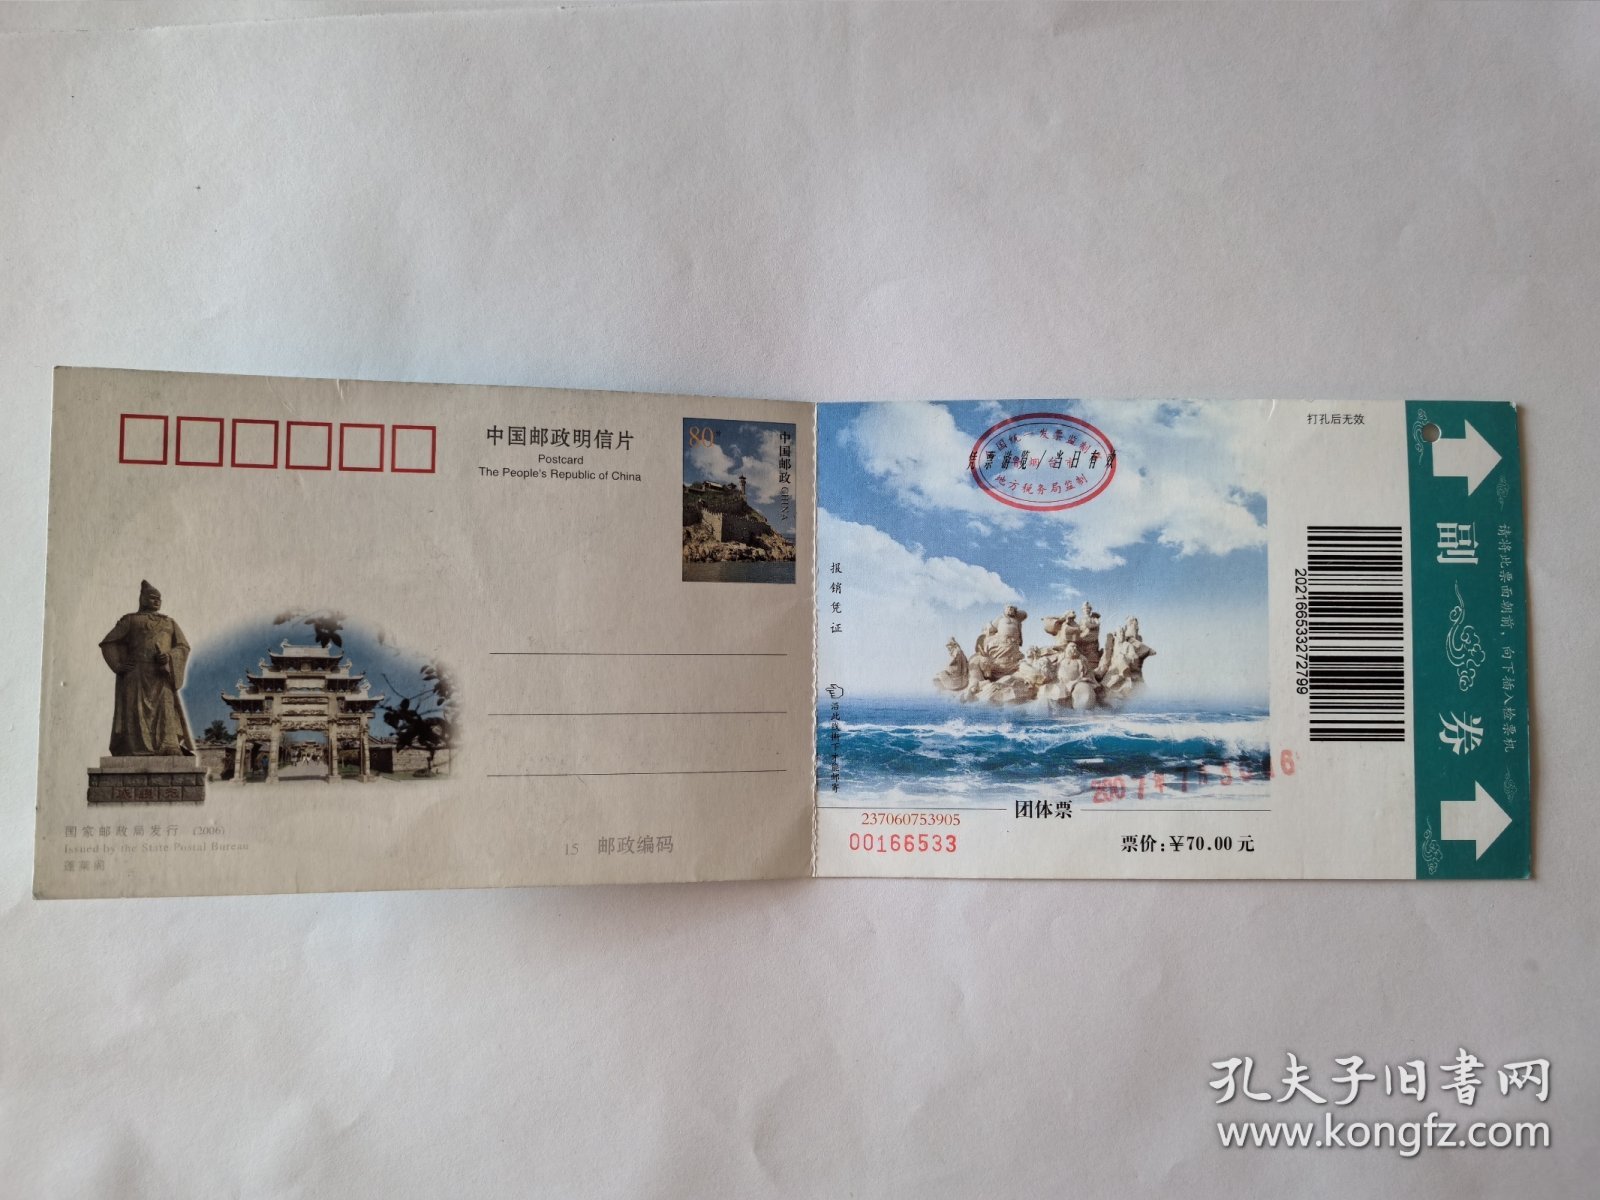 山东门票《蓬莱阁》团体票票价70元 邮资明信片2007年